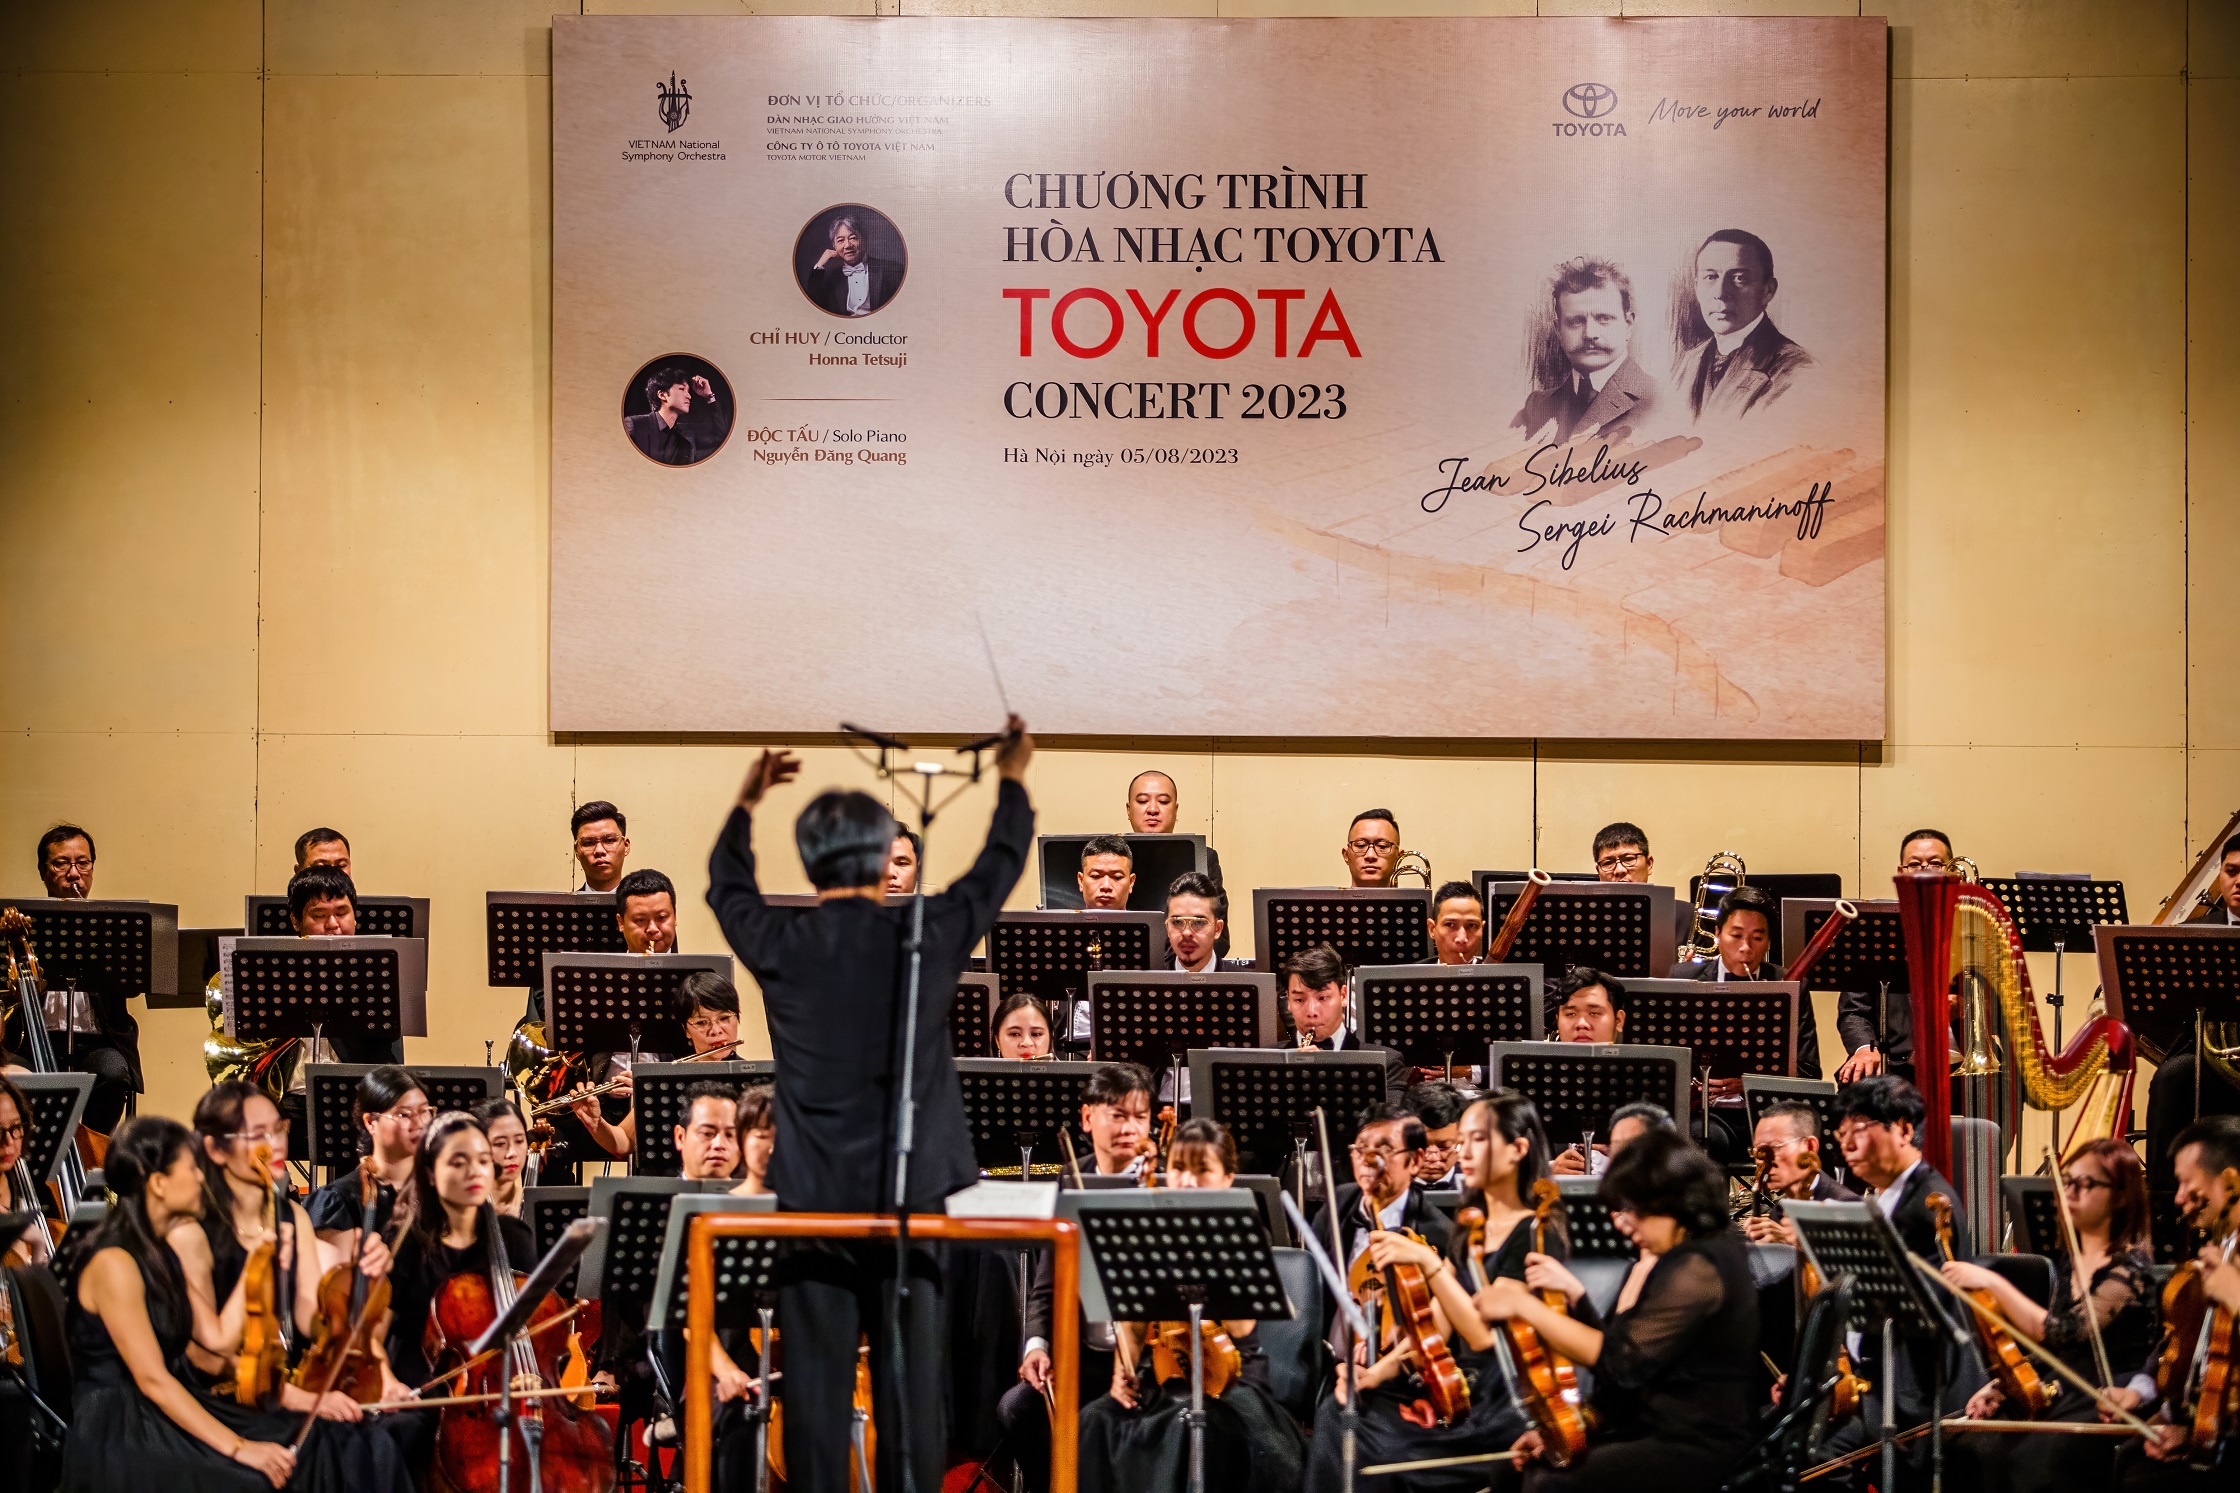  Hòa nhạc Toyota 2023 nhận được sự hưởng ứng nhiệt tình của khán thính giả Hà Nội